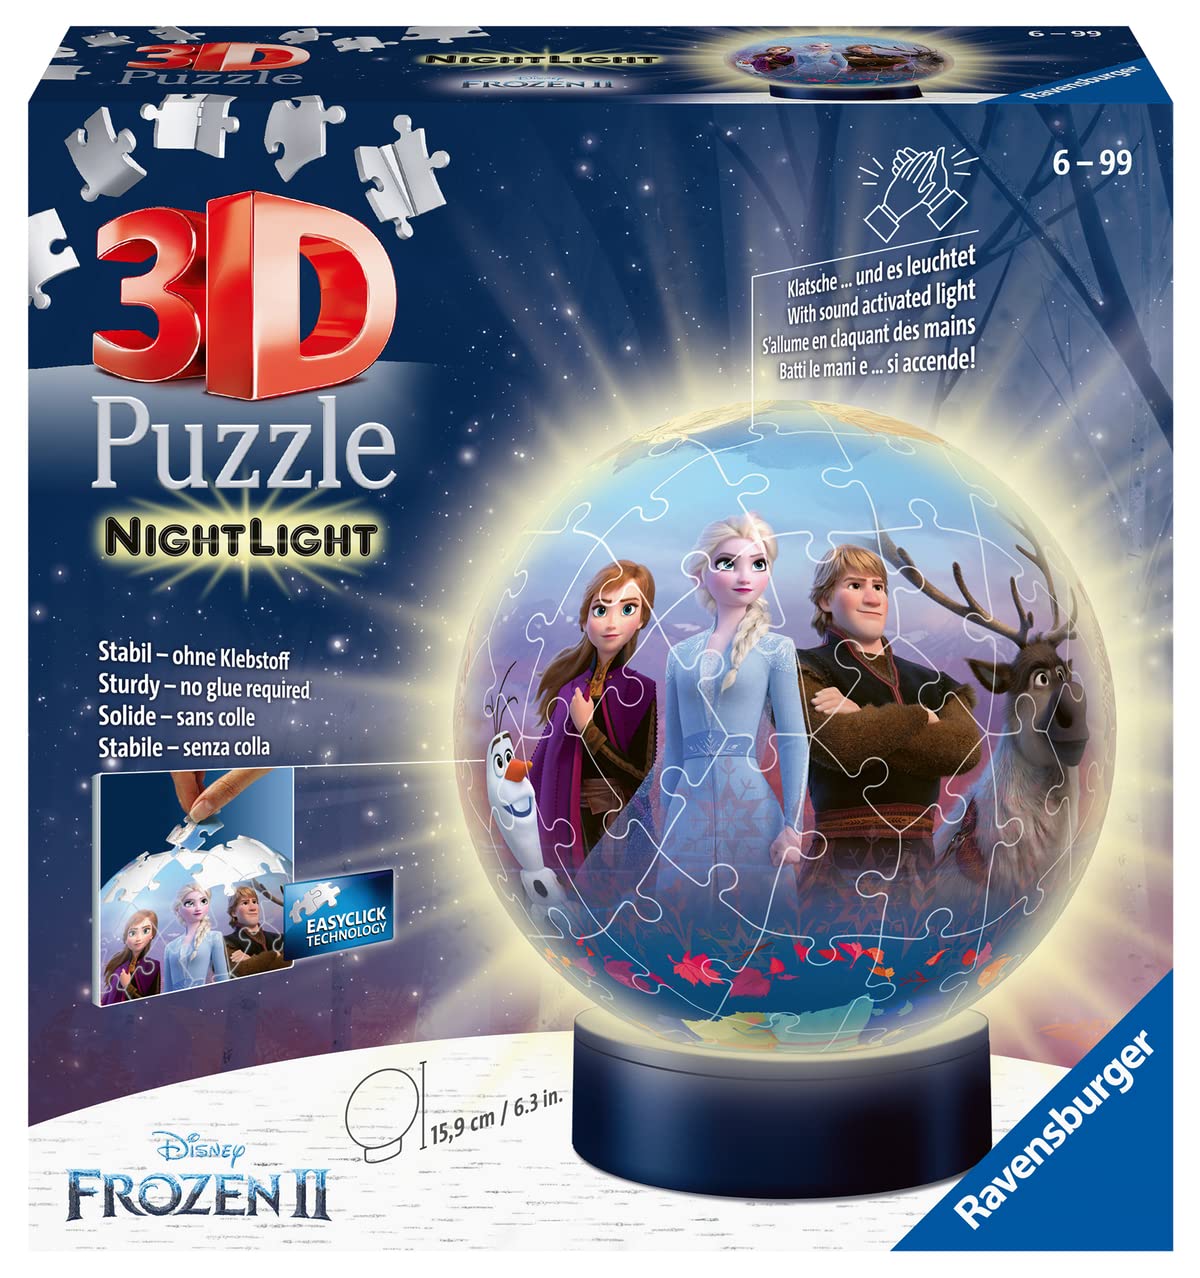 Ravensburger 3D Puzzle 11141 - Nachtlicht Puzzle-Ball Disney Frozen 2 - 72 Teile - ab 6 Jahren, LED Nachttischlampe mit Klatsch-Mechanismus